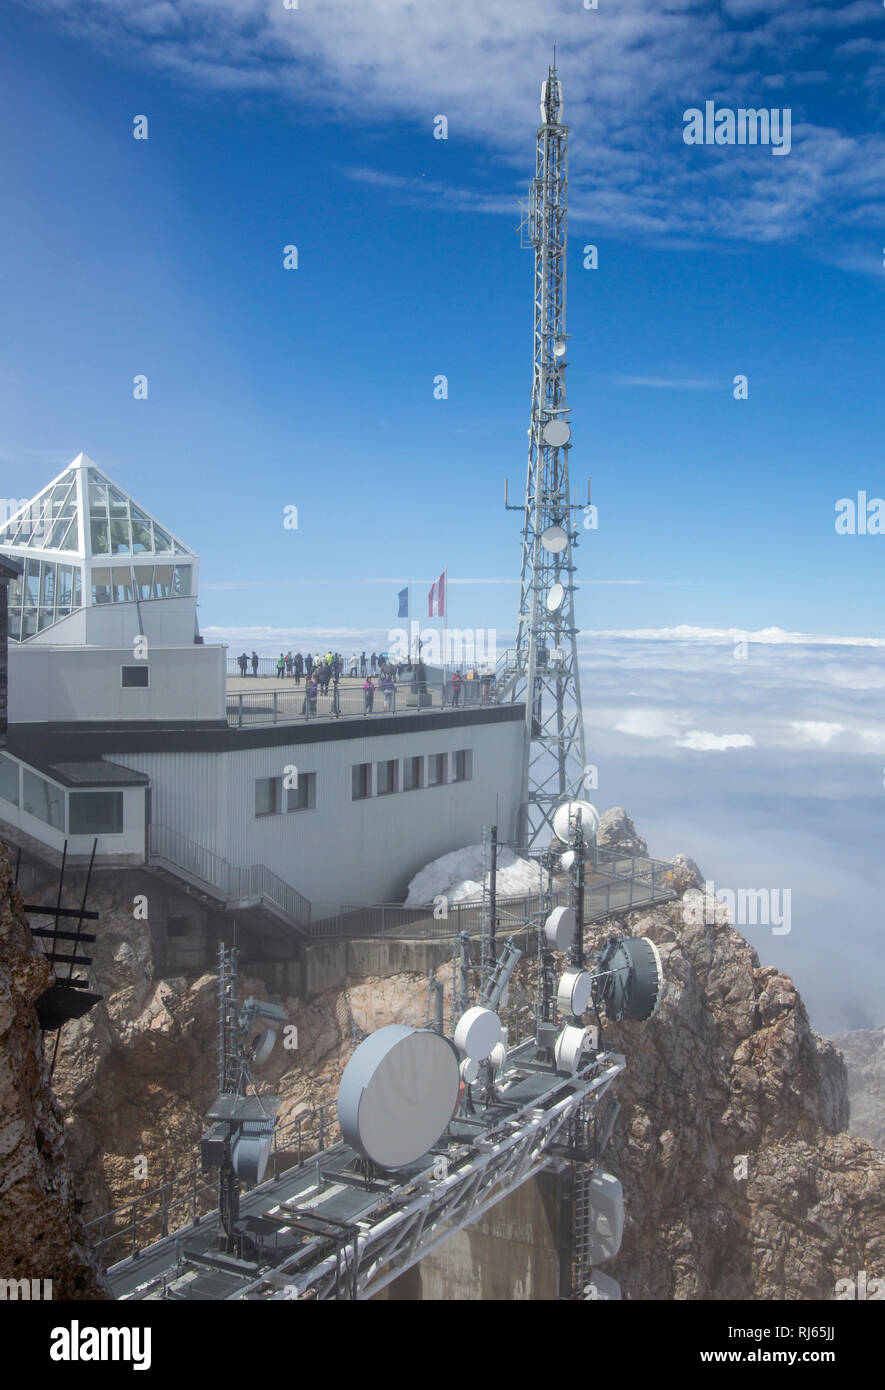 Sendemasten und Antennen vor dem Münchner Haus, der Bergstation und Aussichtsplattform auf der Zugspitze, Deutschlands höchster Berg, Stock Photo